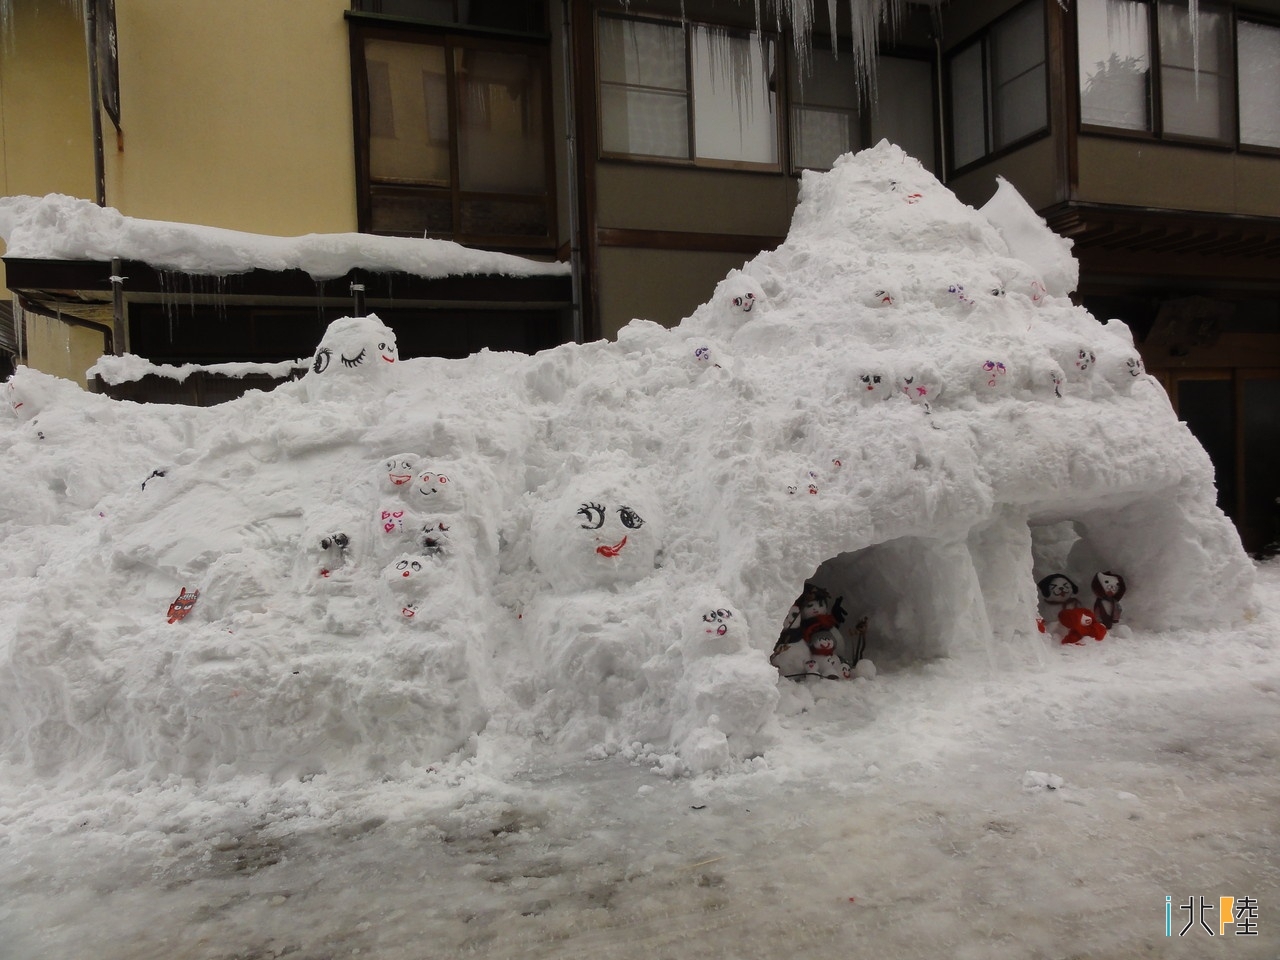 白峰 雪だるま祭り 2012石川県白山市